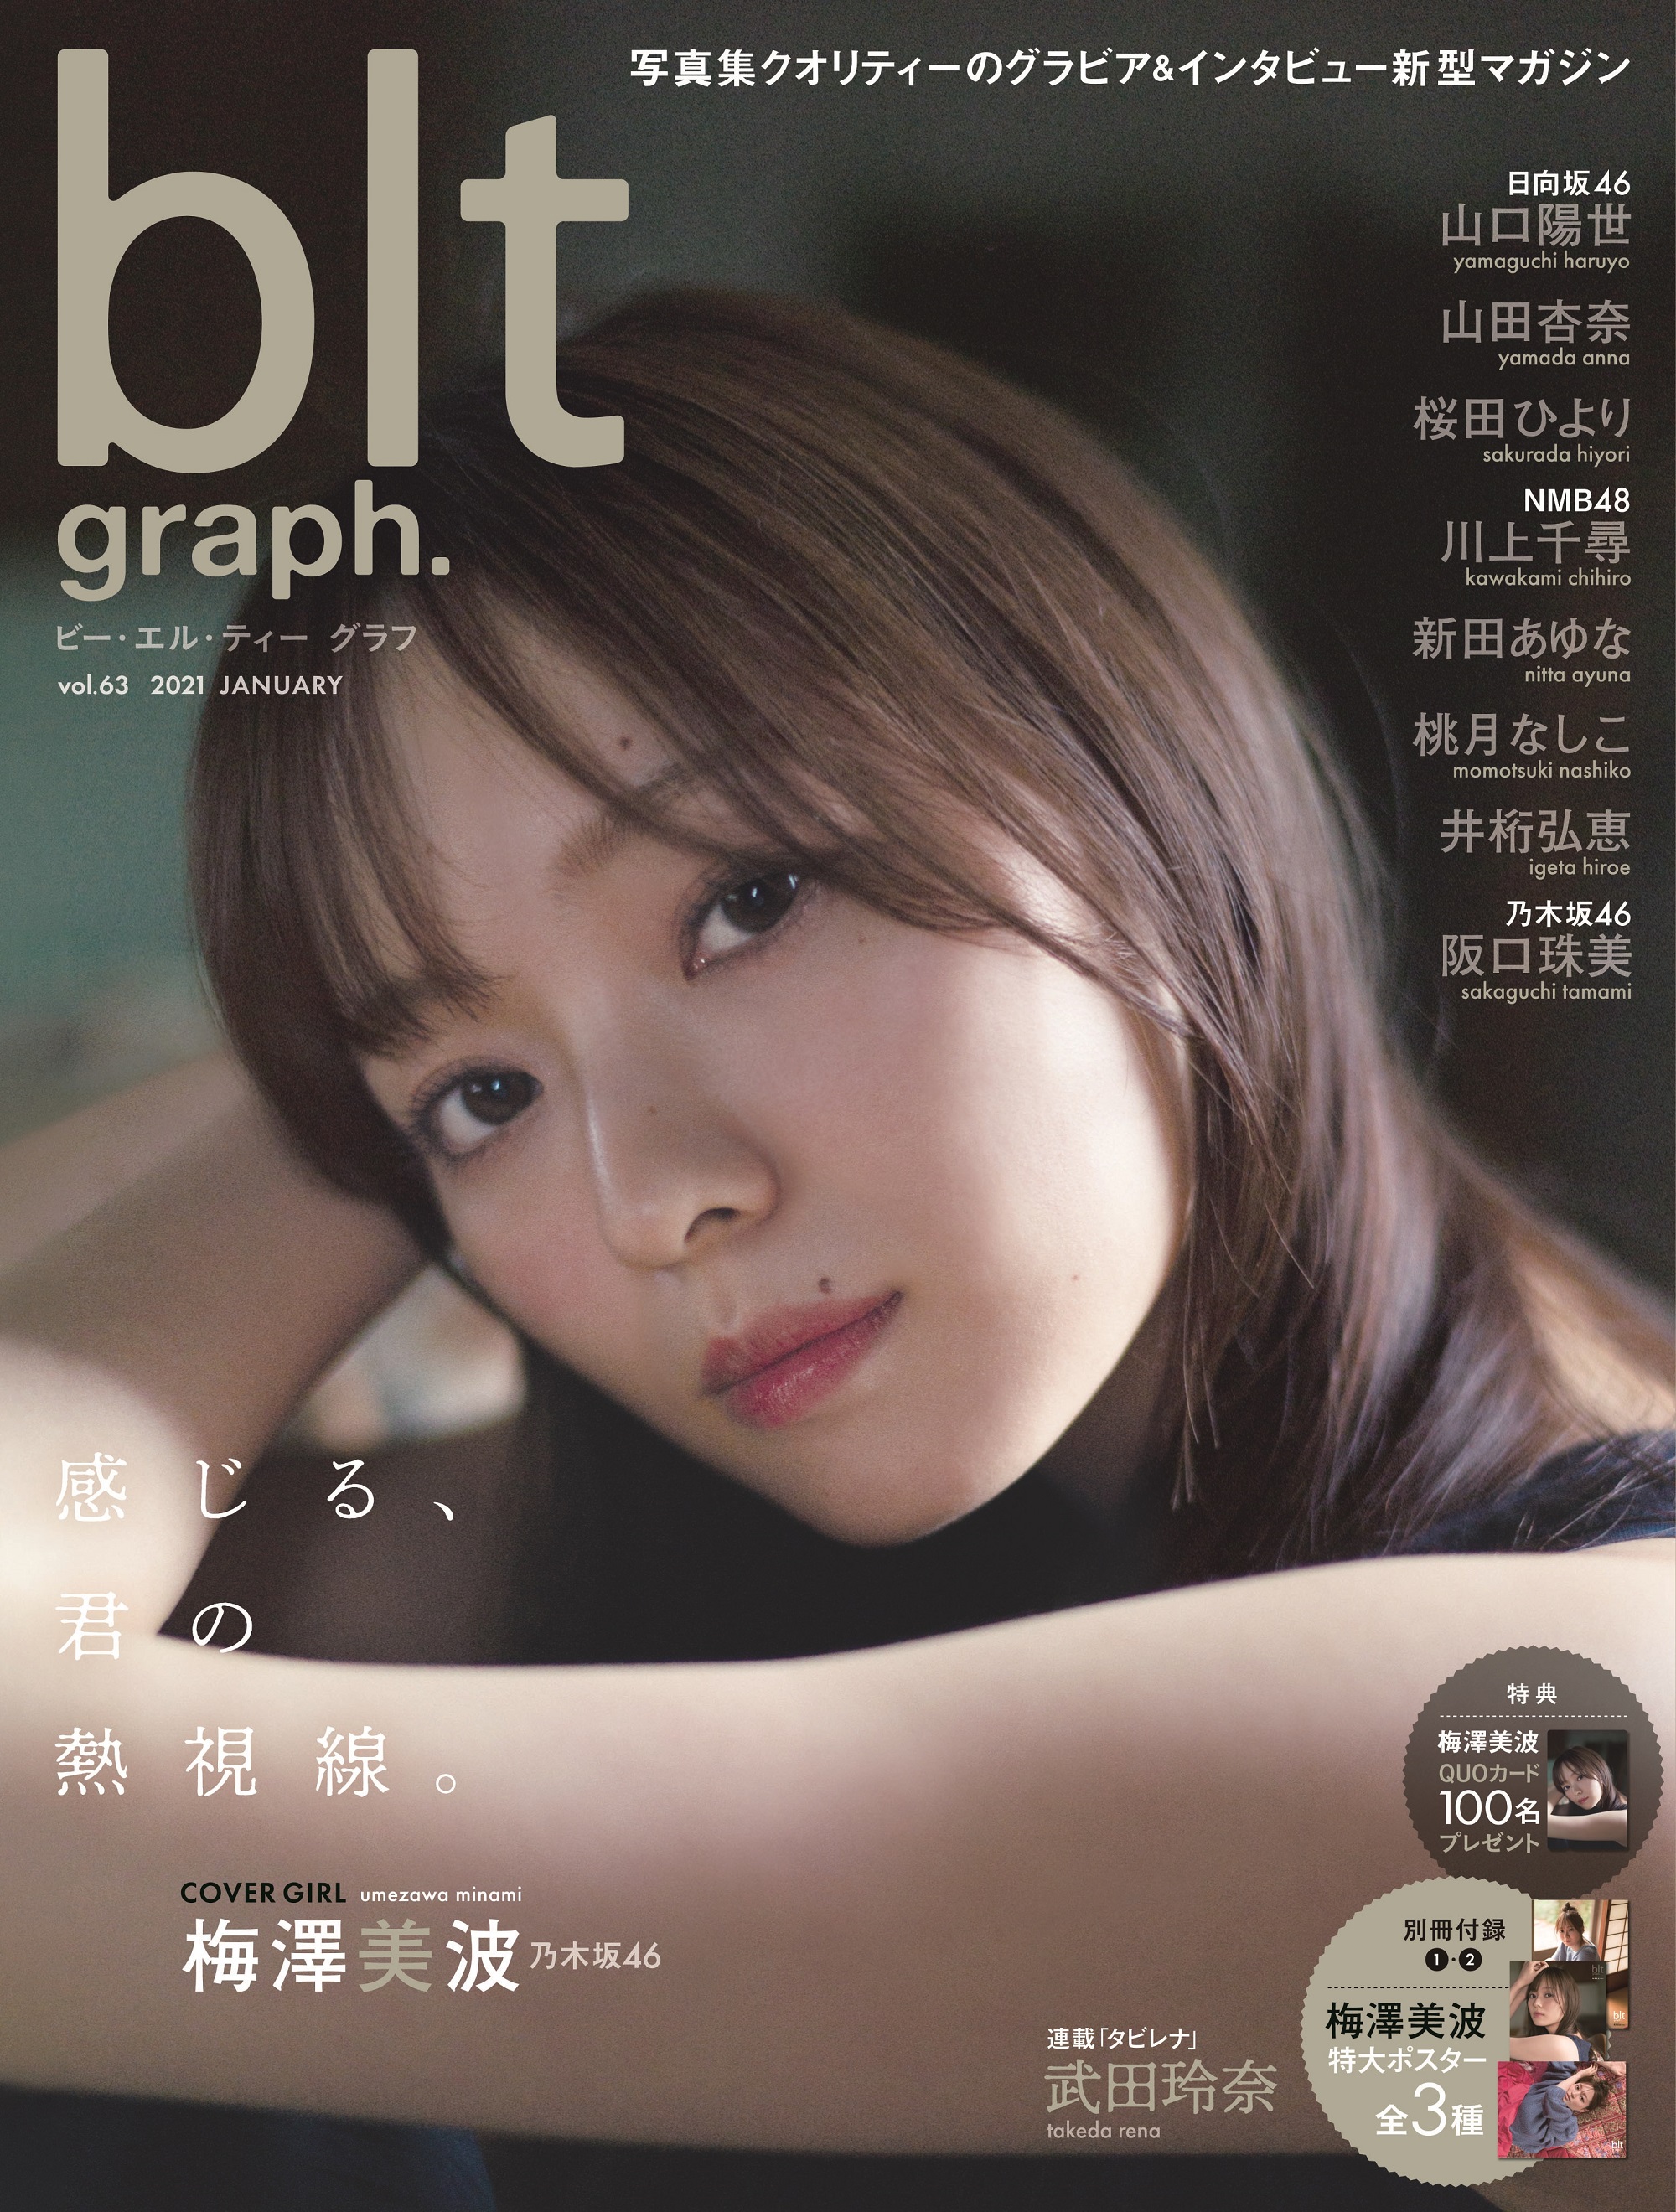 blt graph.vol.63」表紙画像解禁! 乃木坂46梅澤美波、美しすぎる熱視線